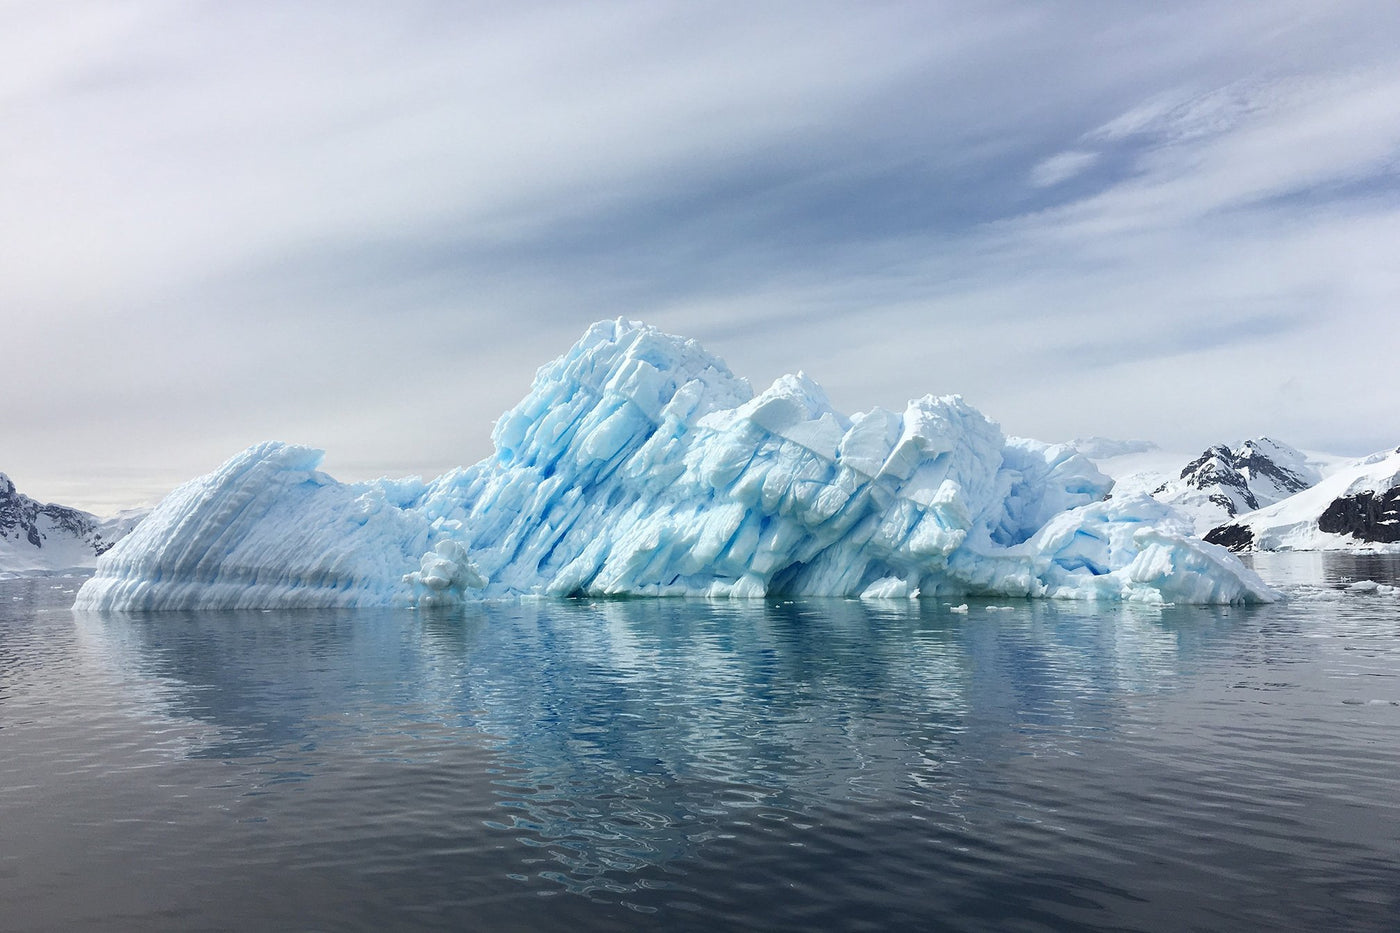 Etelämantereen löytymisestä 200 vuotta - Rohje retkikunnan mukana